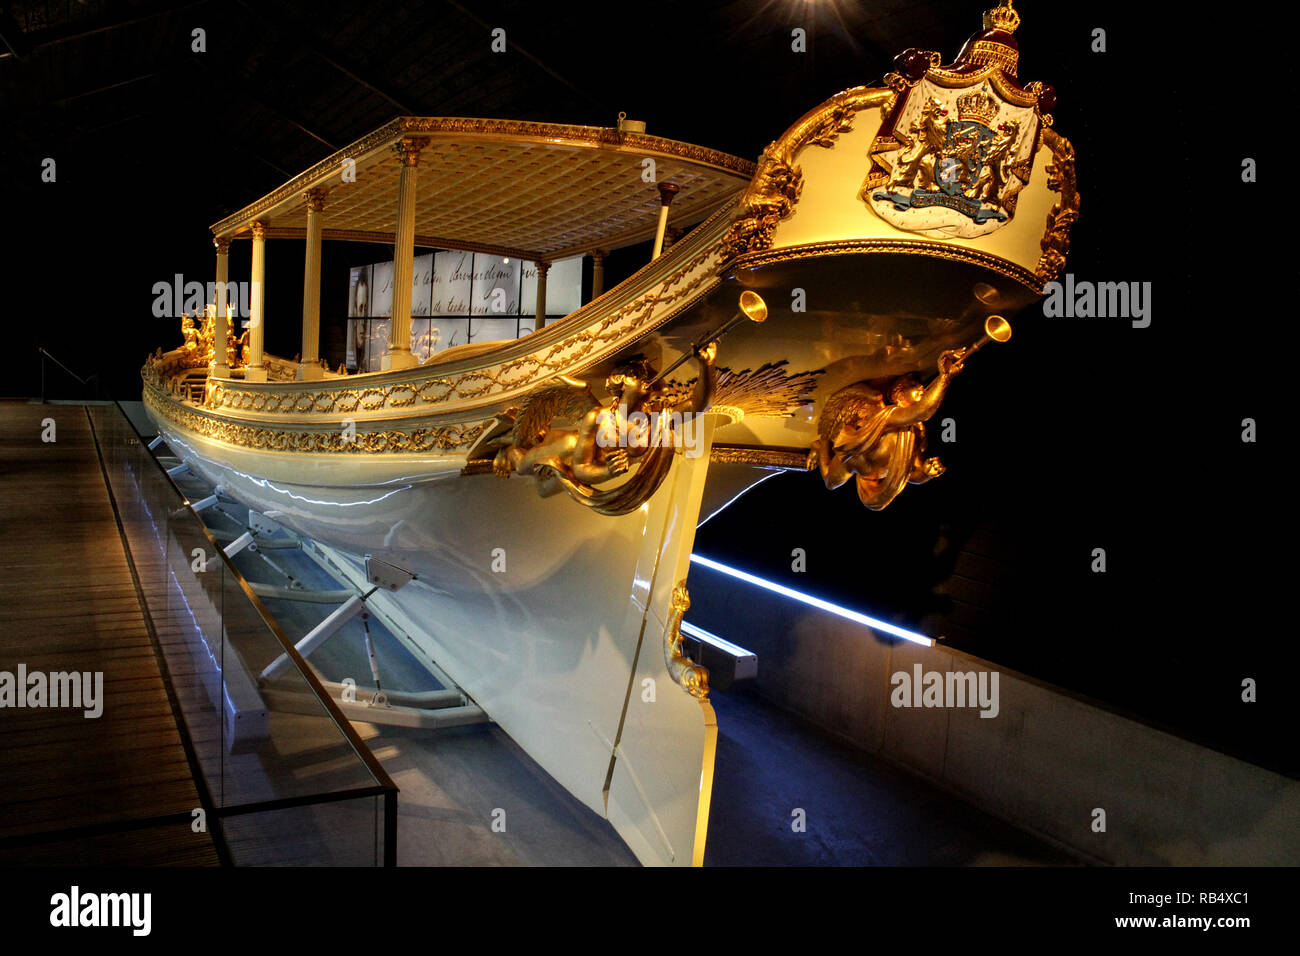 La Barge royale néerlandaise au National Maritime Museum, Amsterdam, Pays-Bas Banque D'Images